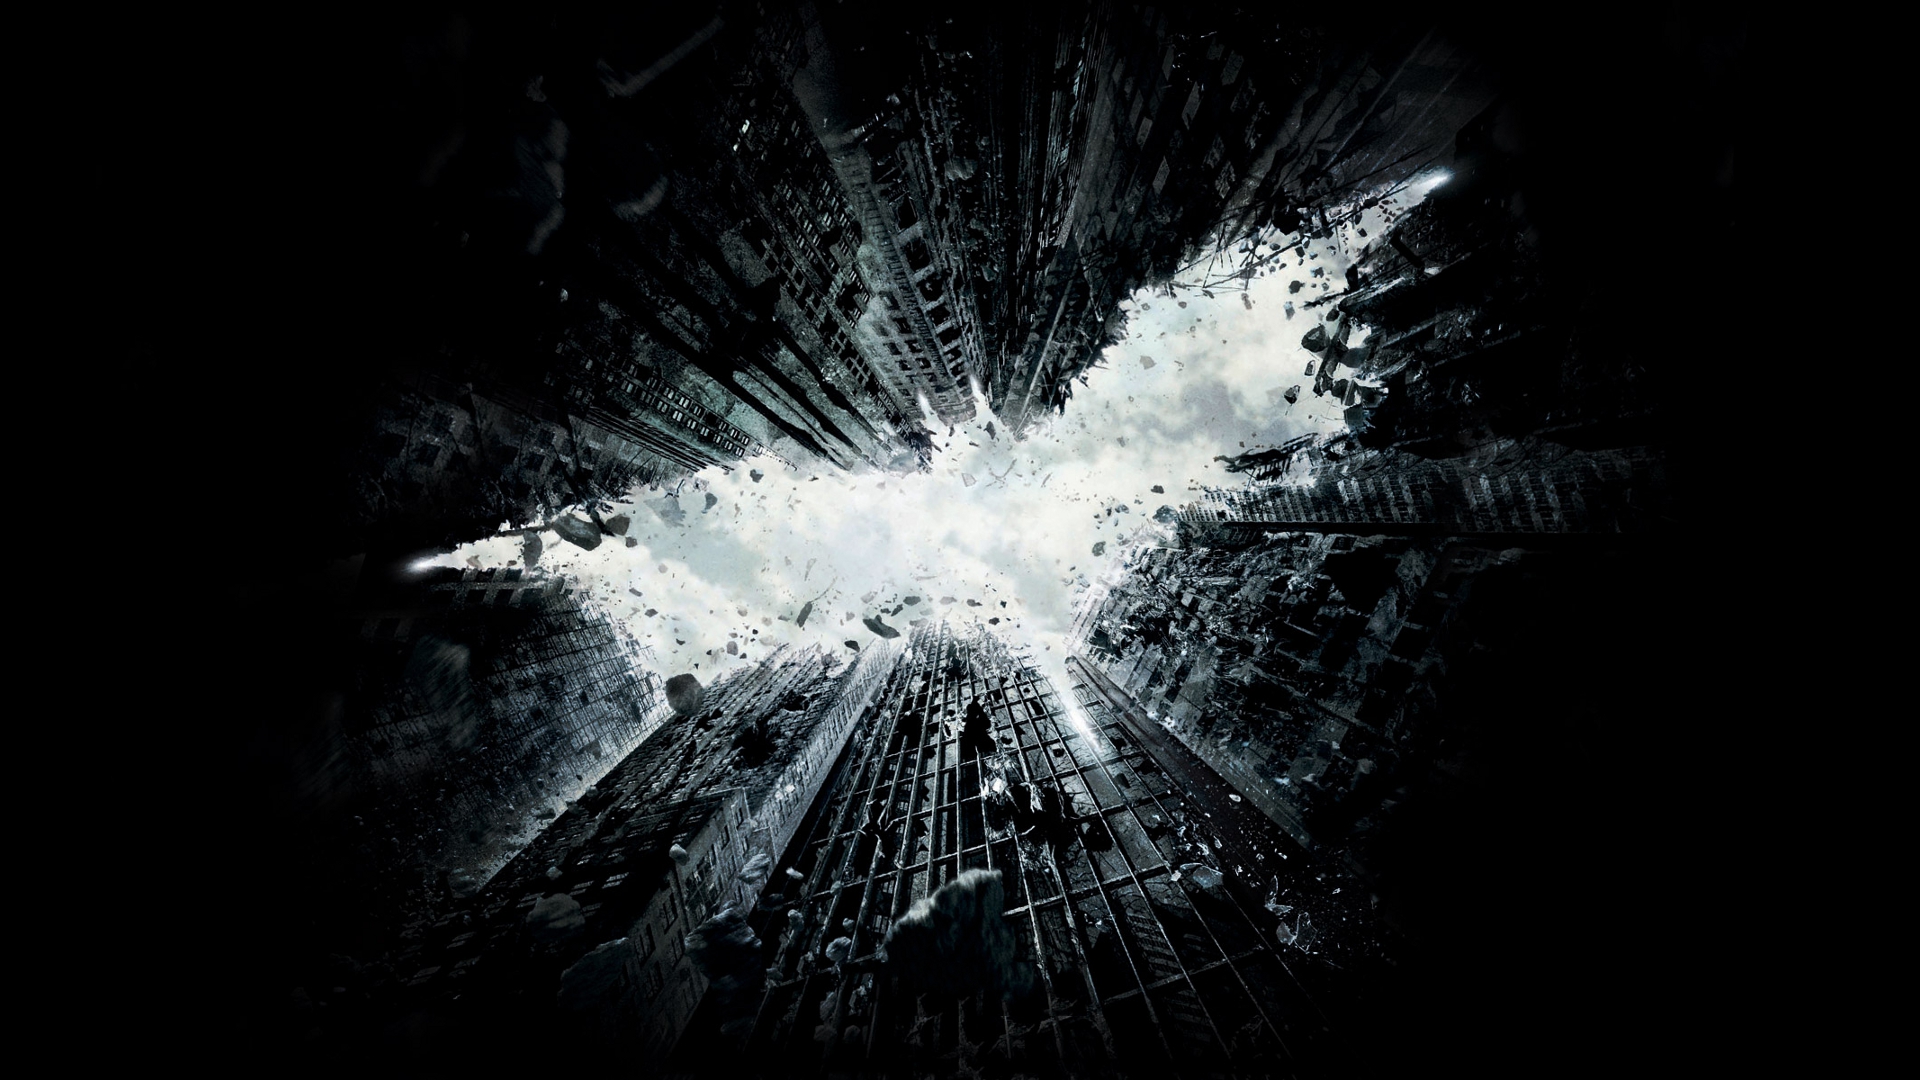 Dark Knight Rises Wallpaper From